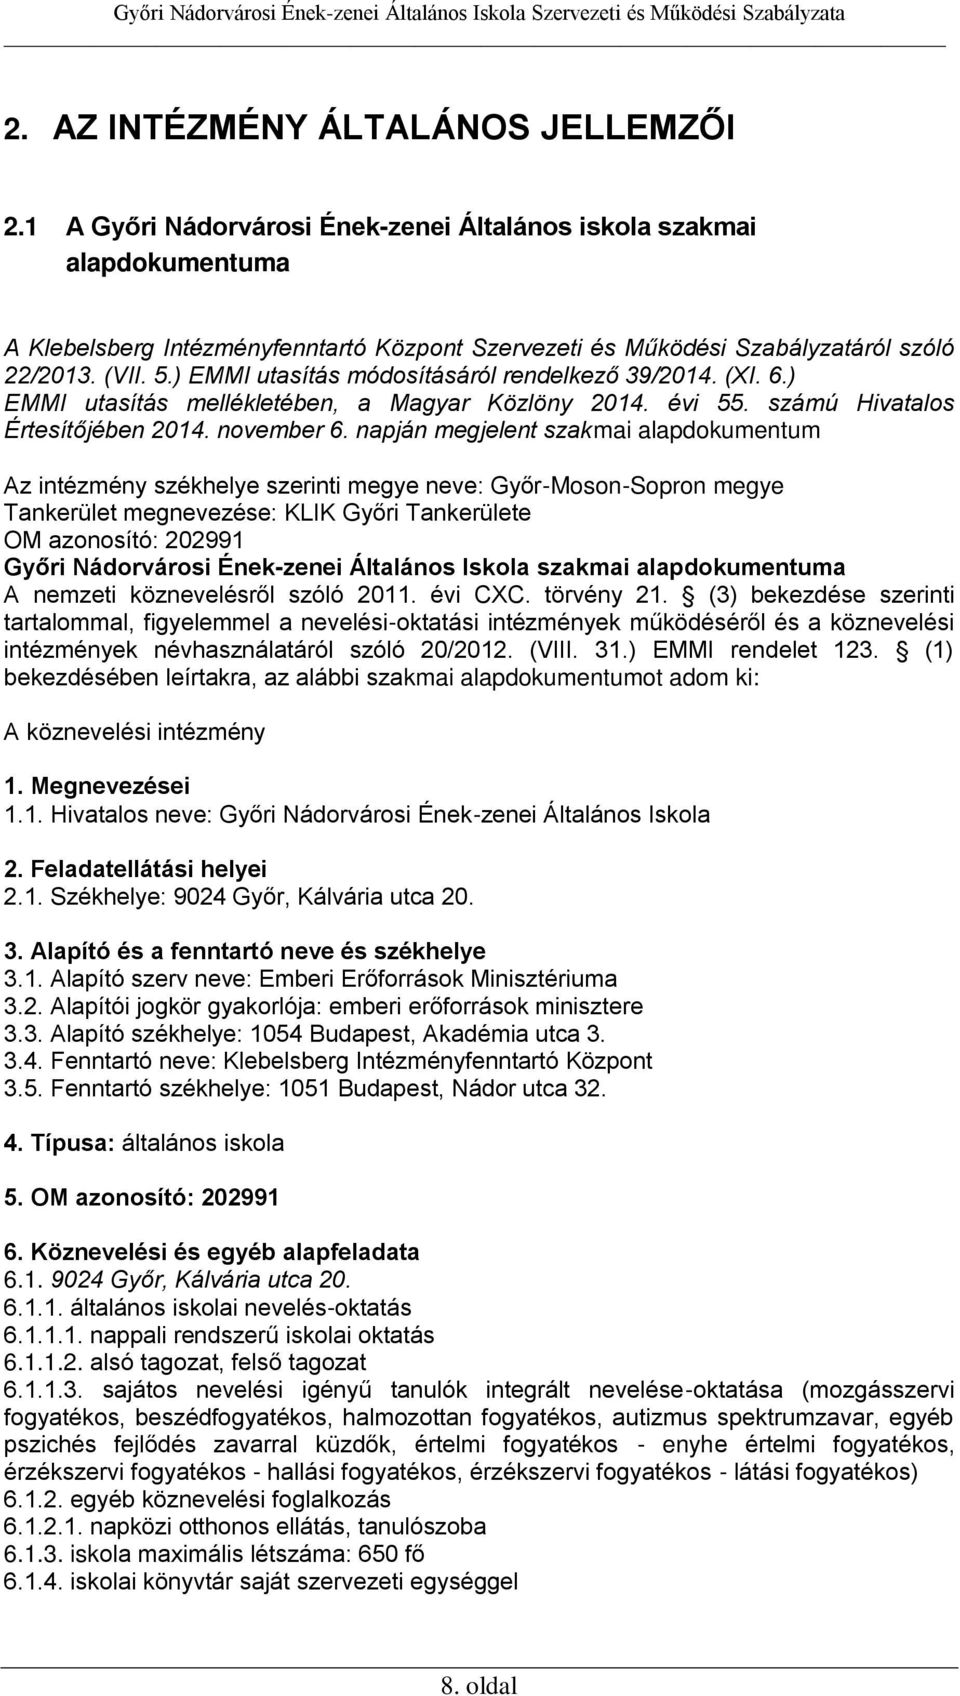 ) EMMI utasítás módosításáról rendelkező 39/2014. (XI. 6.) EMMI utasítás mellékletében, a Magyar Közlöny 2014. évi 55. számú Hivatalos Értesítőjében 2014. november 6.